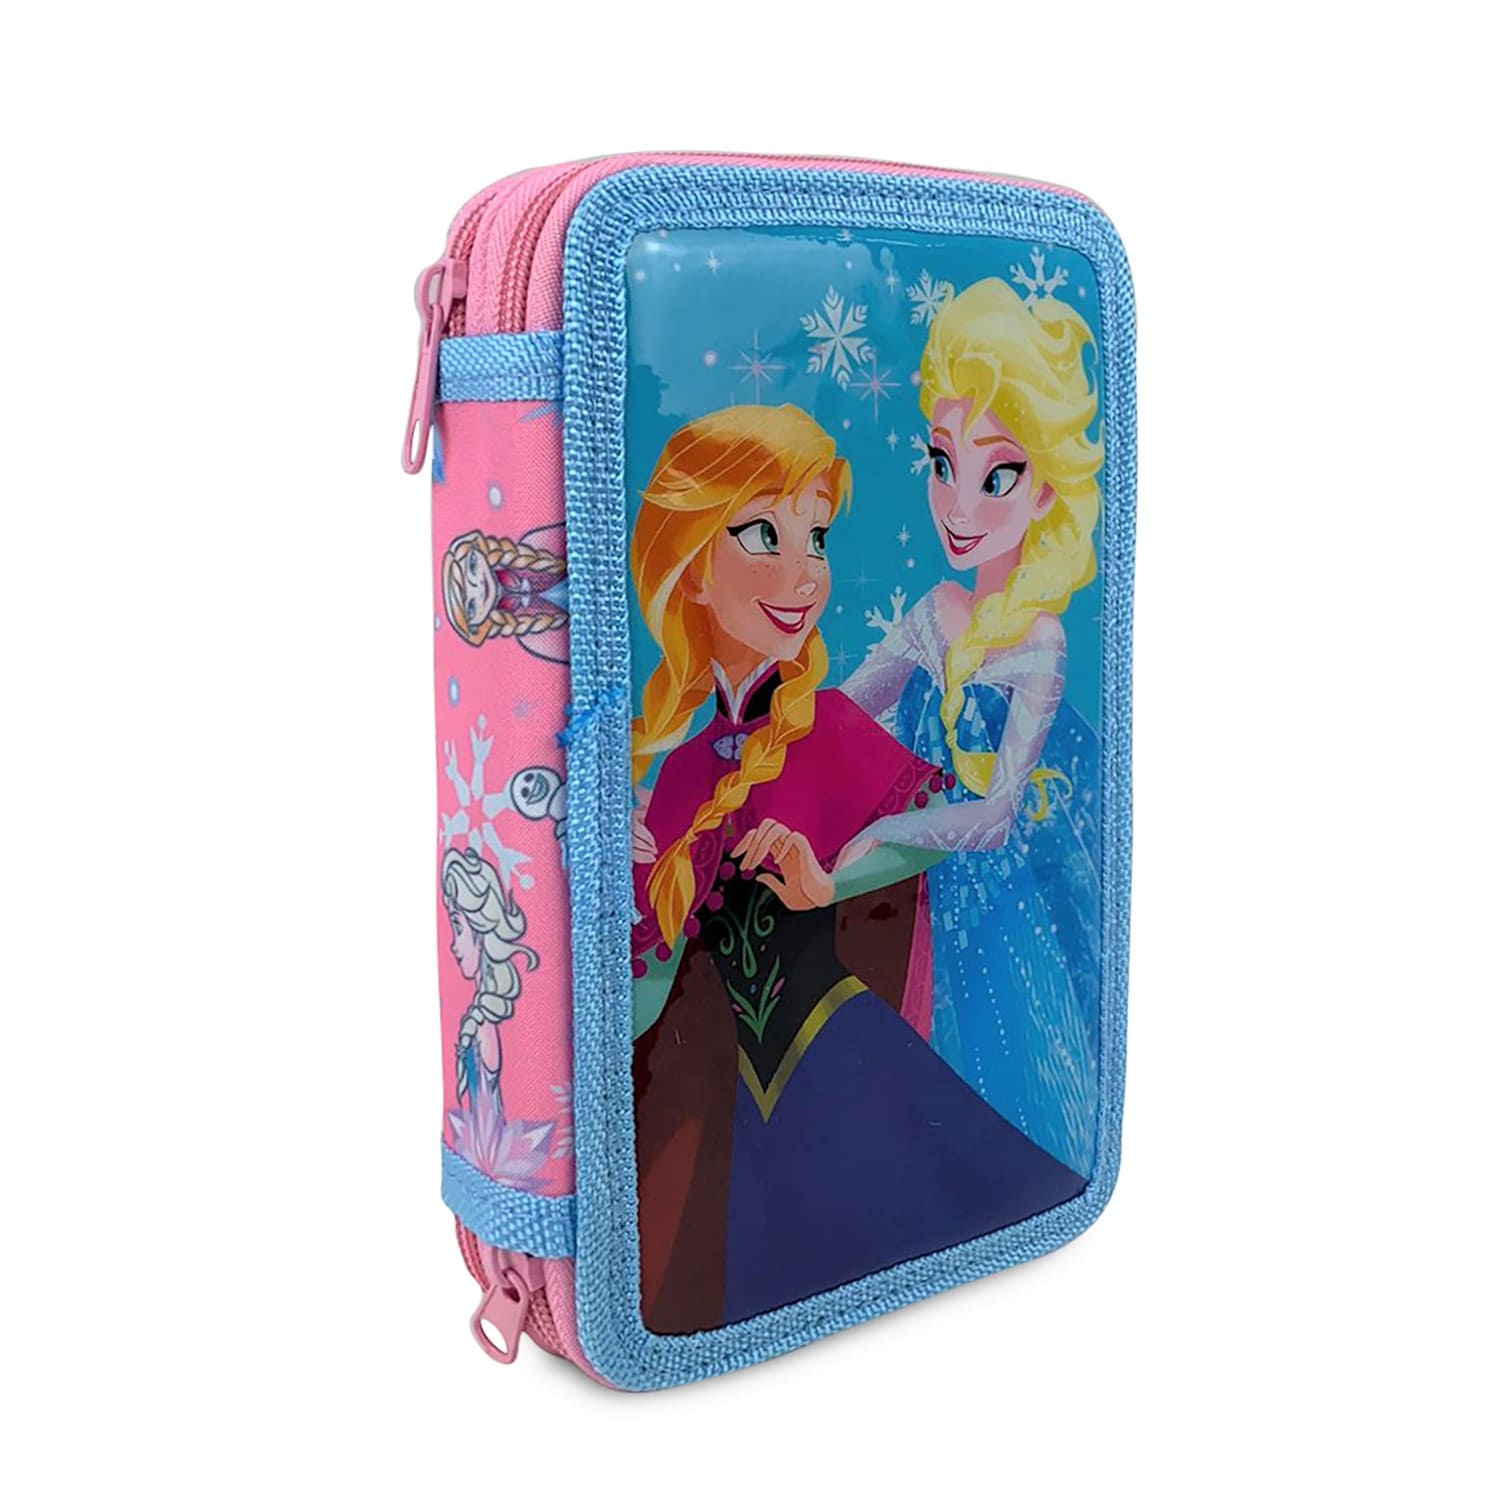 Astuccio borsello scuola Disney Frozen Elsa ufficiale colori 2 scomparti 4330